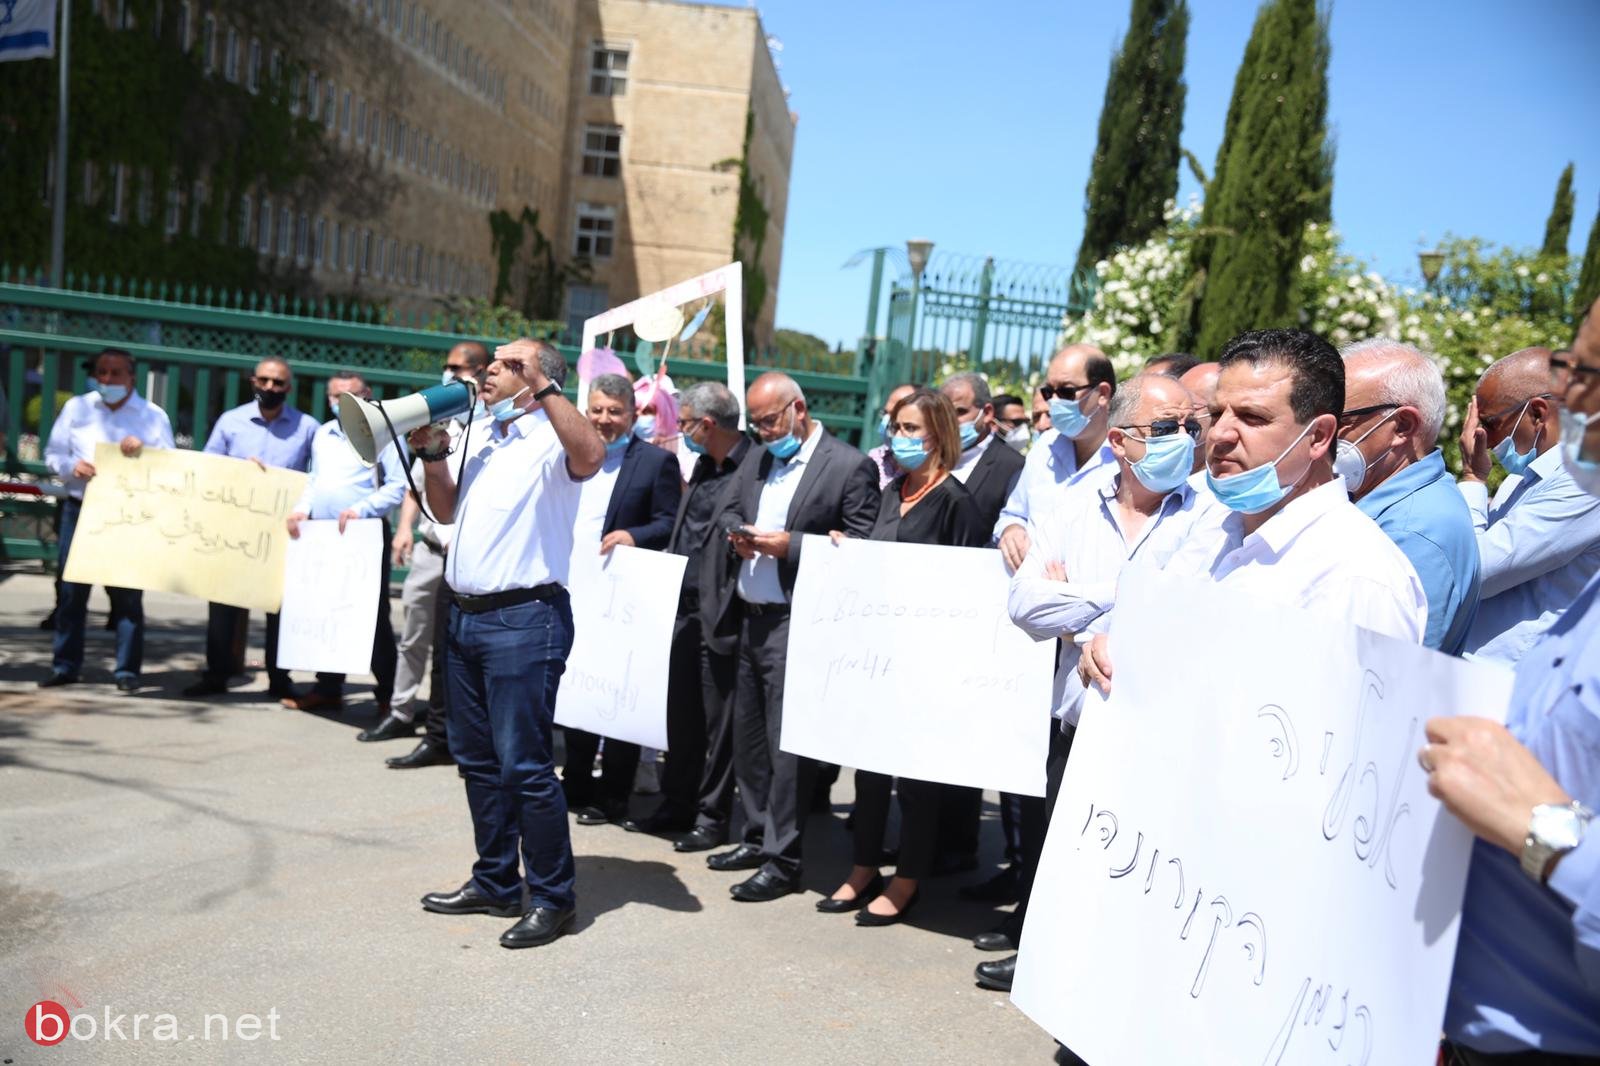 رؤساء السلطات المحلية وأعضاء الكنيست العرب يتظاهرون في القدس للمطالبة بالميزانيات-2